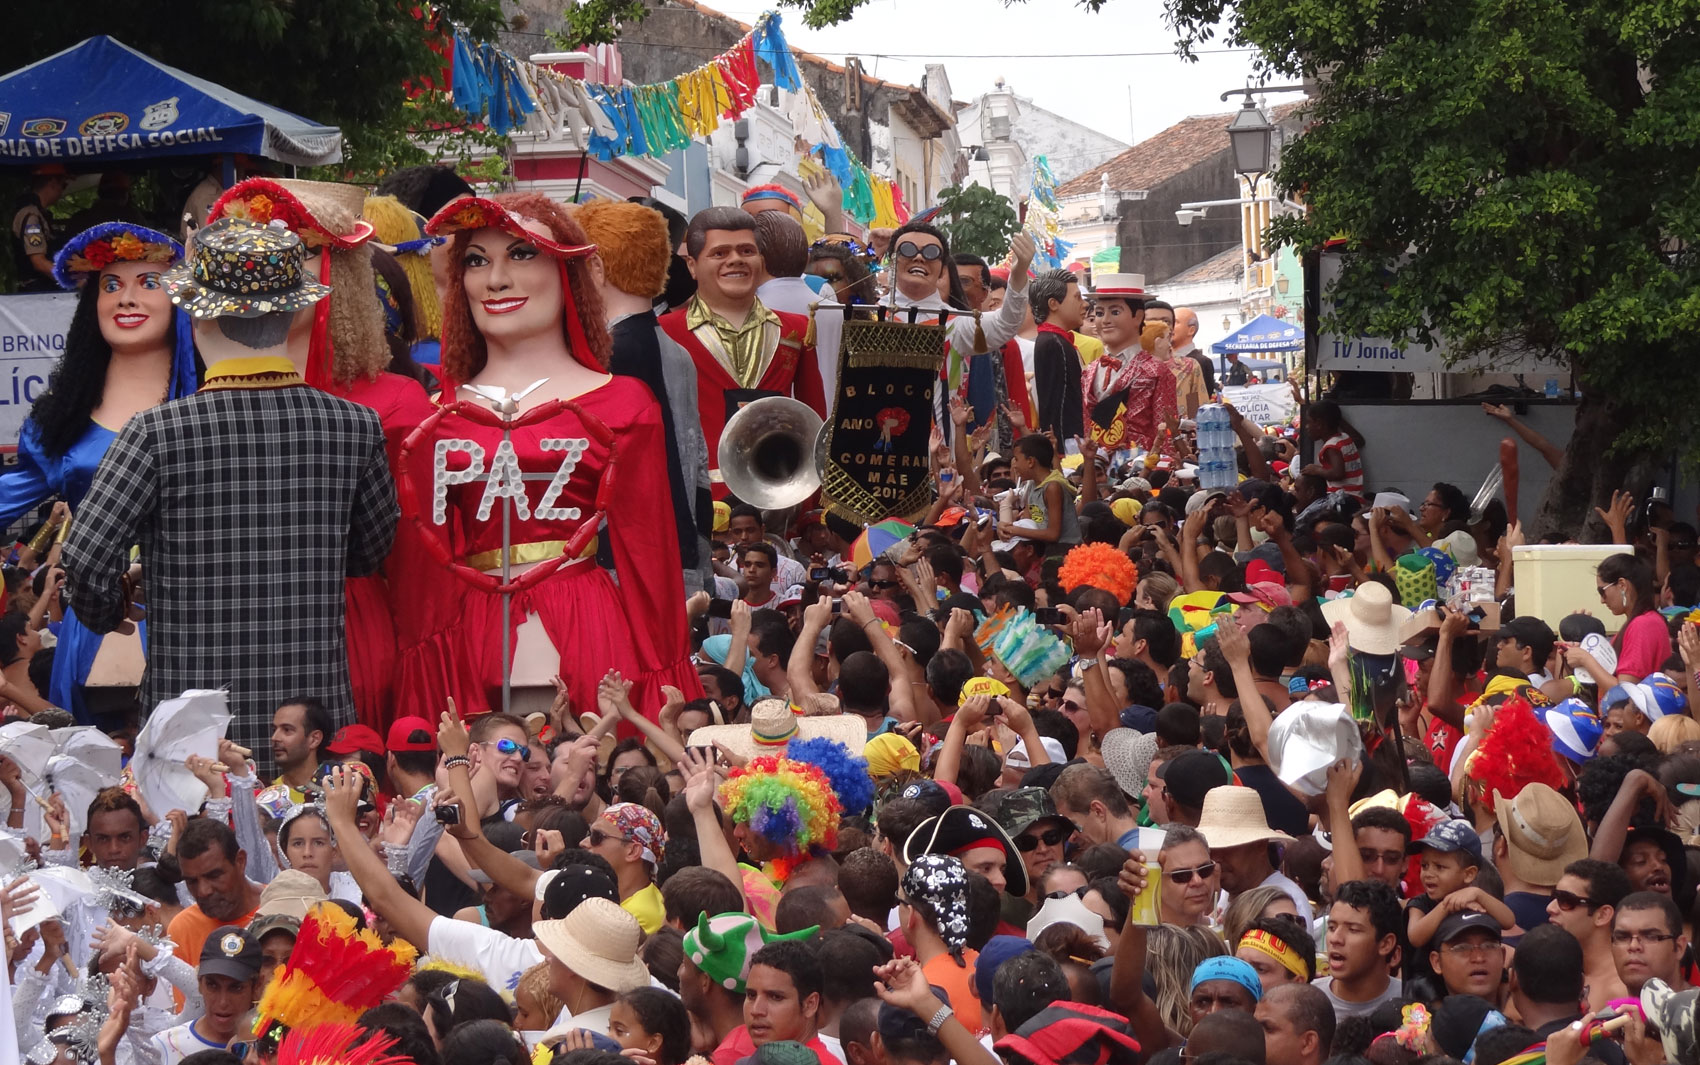 Bonecos gigantes passaram pela Prefeitura de Olinda; foliões acompanharam desfile